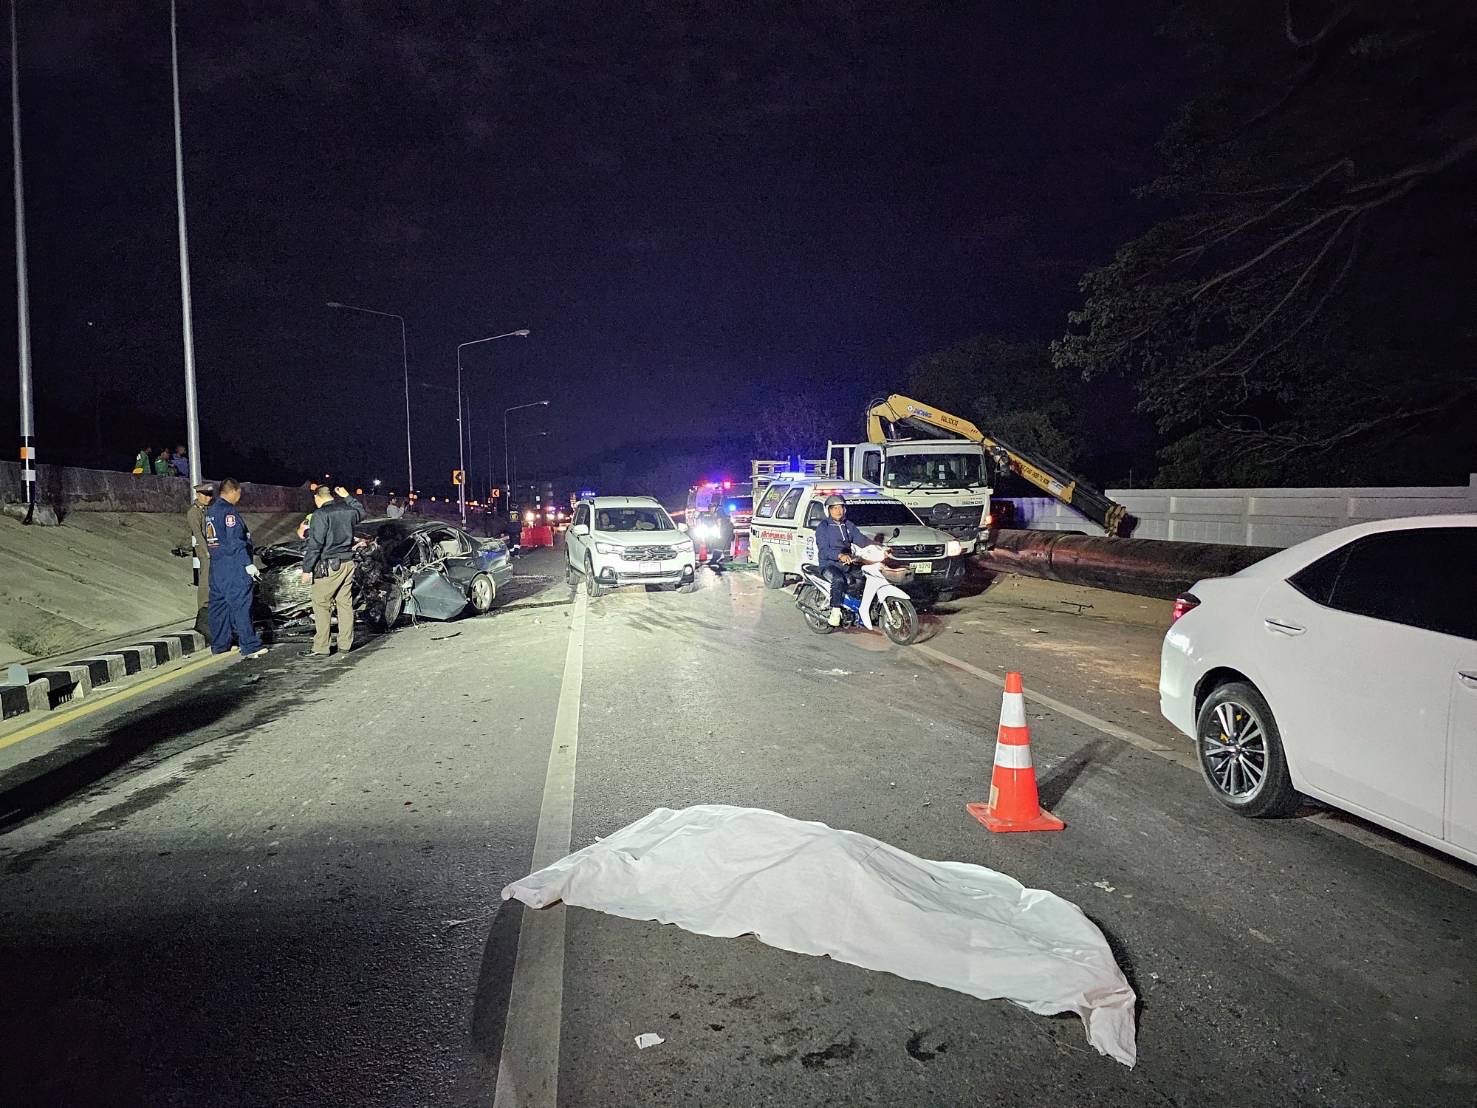 ชลบุรี-สัตหีบ สังเวยไฟทางมืด!! เก๋งชนท้ายพ่วงข้างกระเด็นอัดรถ 6 ล้อทำท่อประปาข้างถนนดับ 2 ศพ